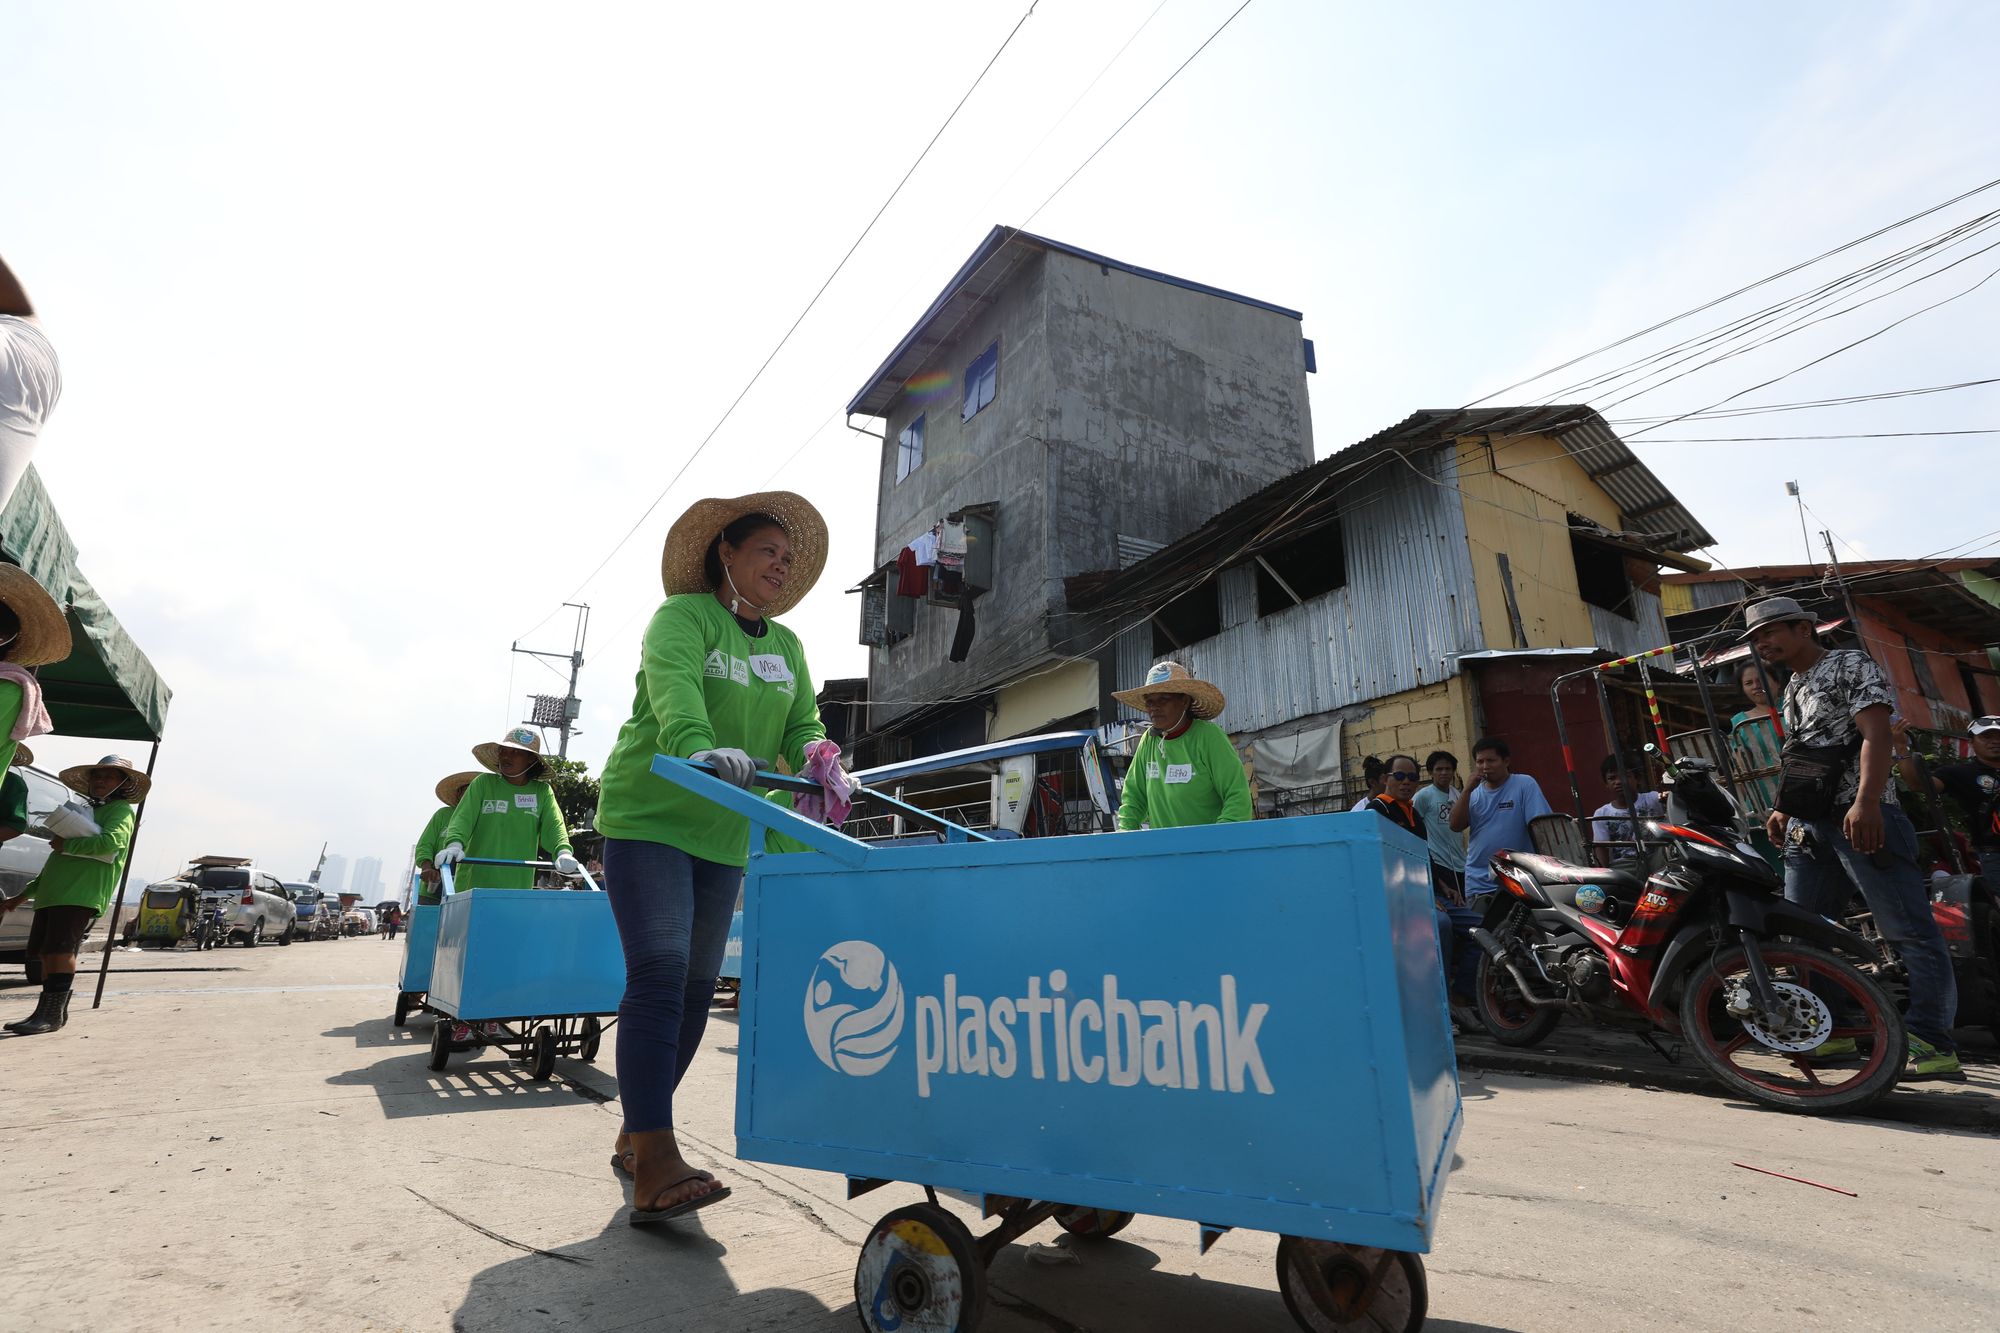 Plastic Bank fördert mit Apps und Blockchain das Recycling in Entwicklungsländern